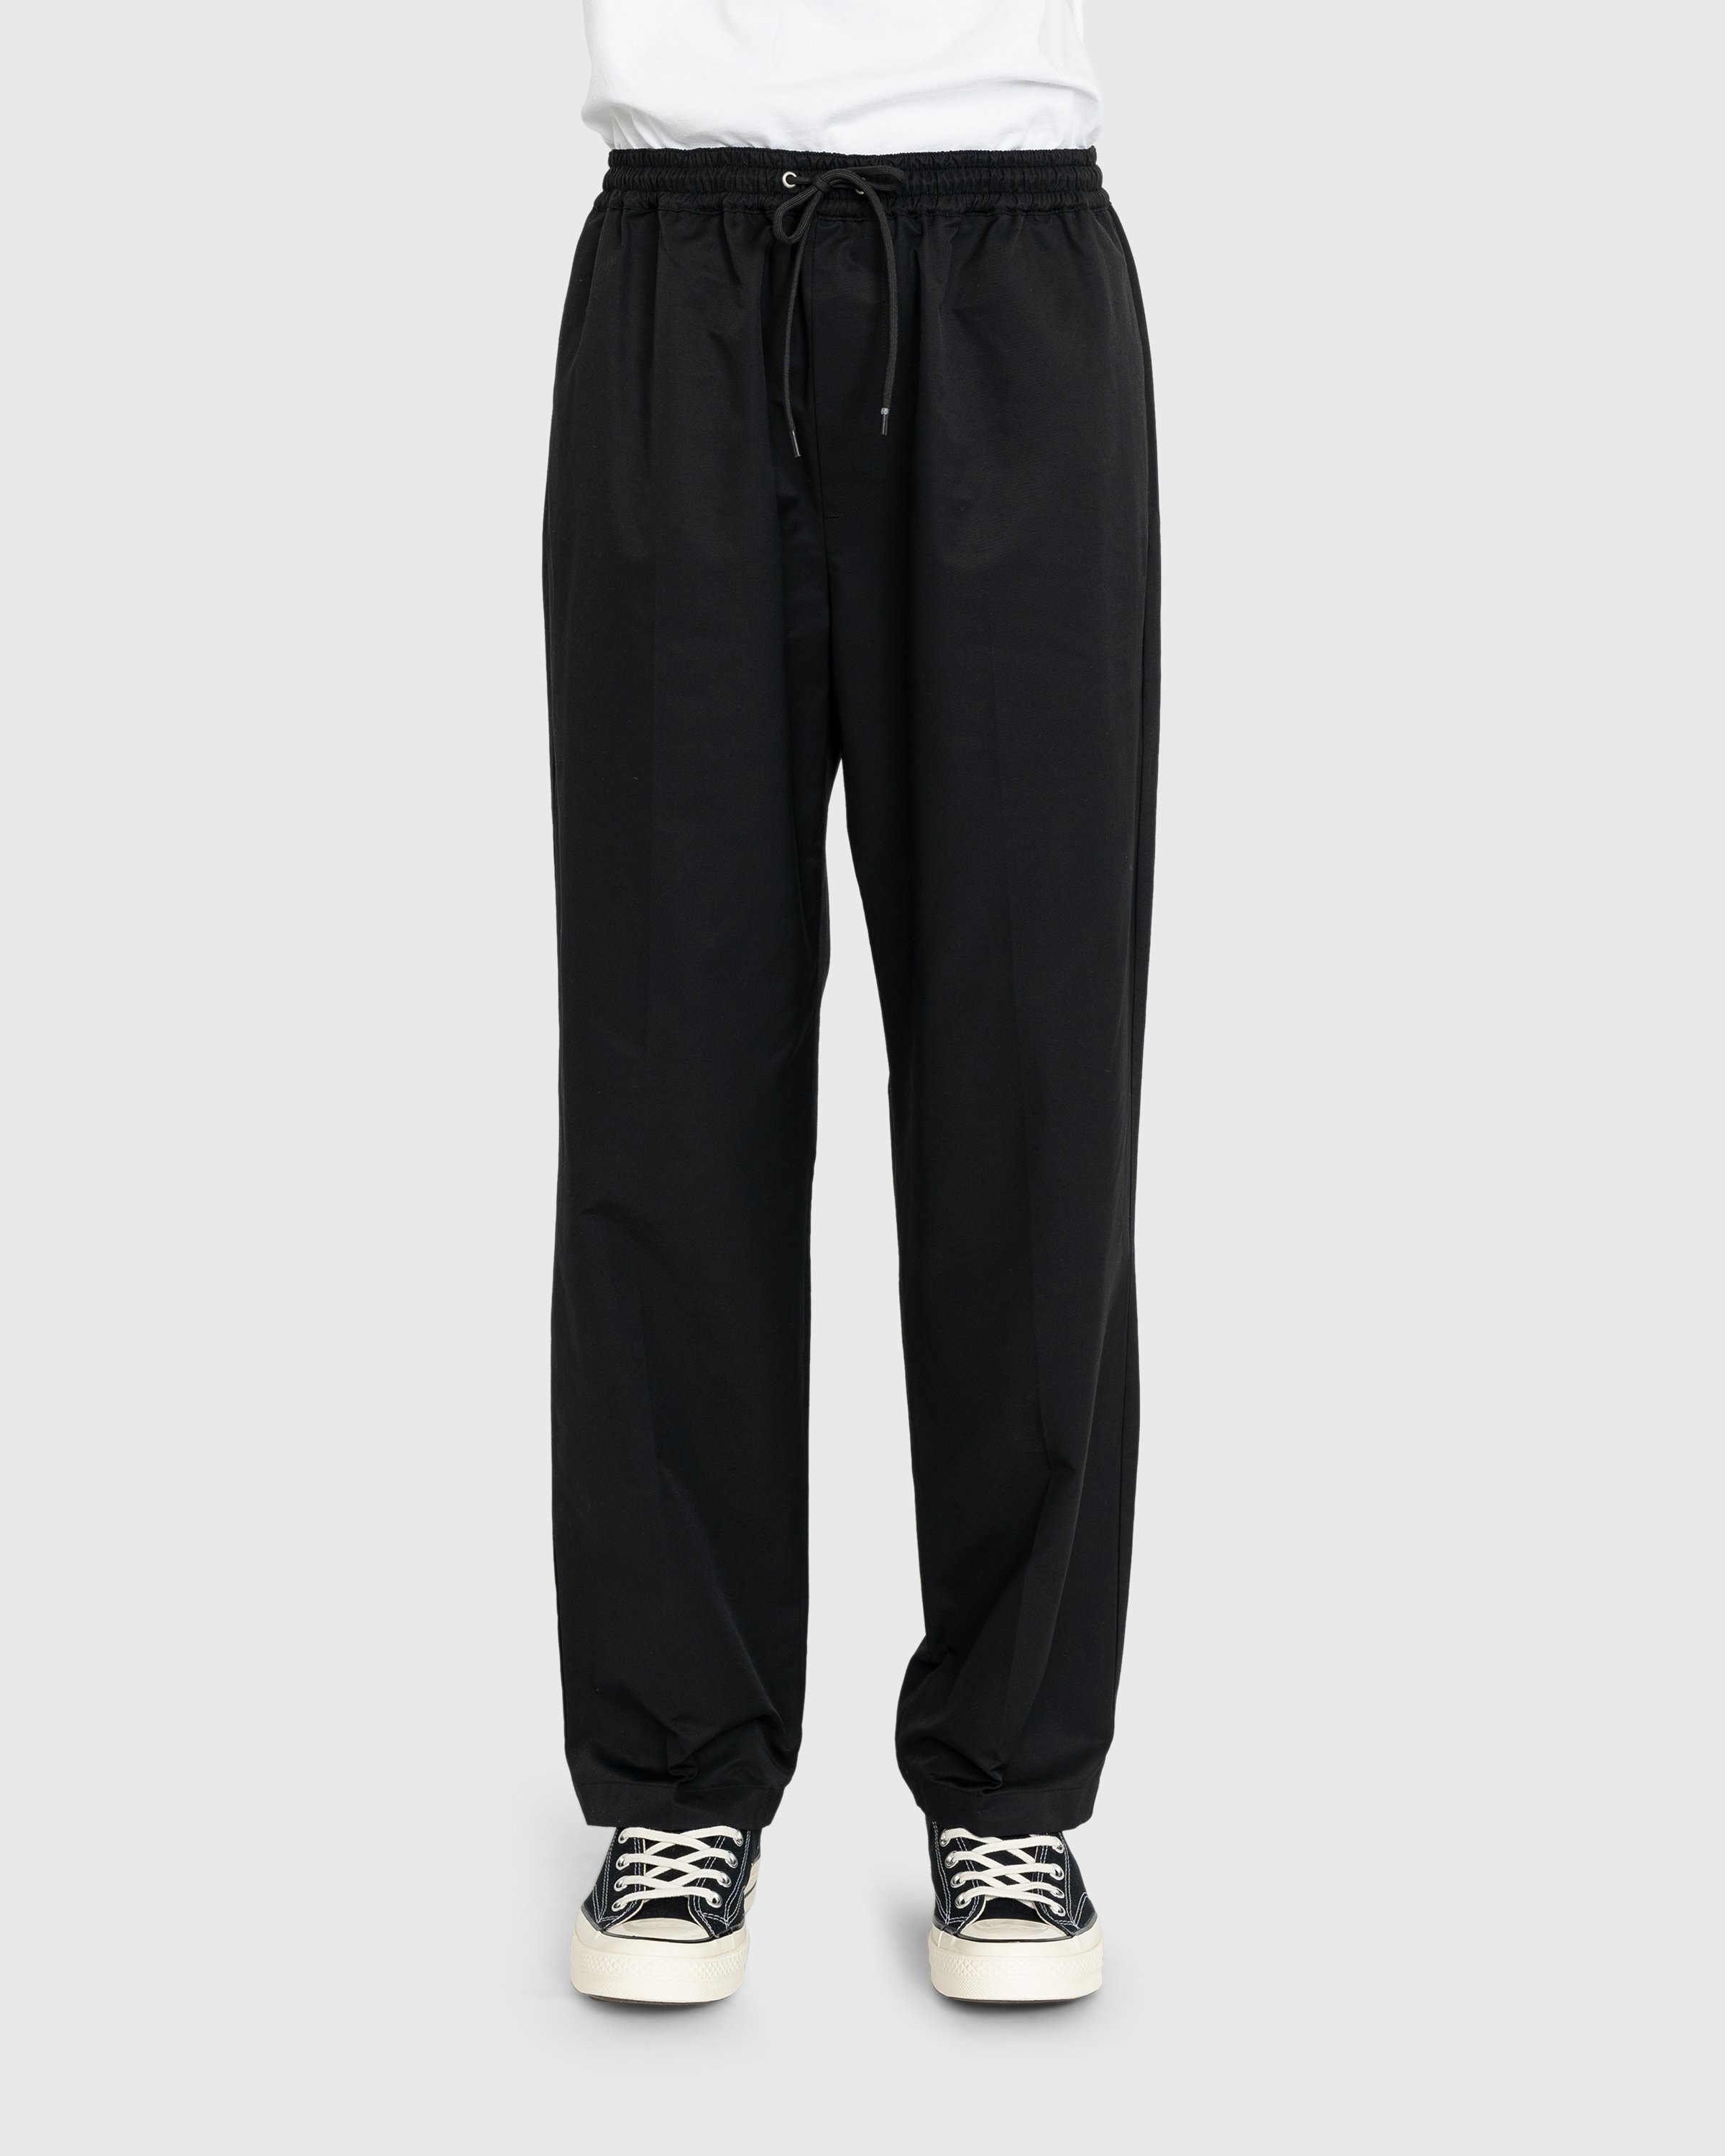 Highsnobiety - Cotton Nylon Elastic Pants Black - Clothing - Black - Image 2